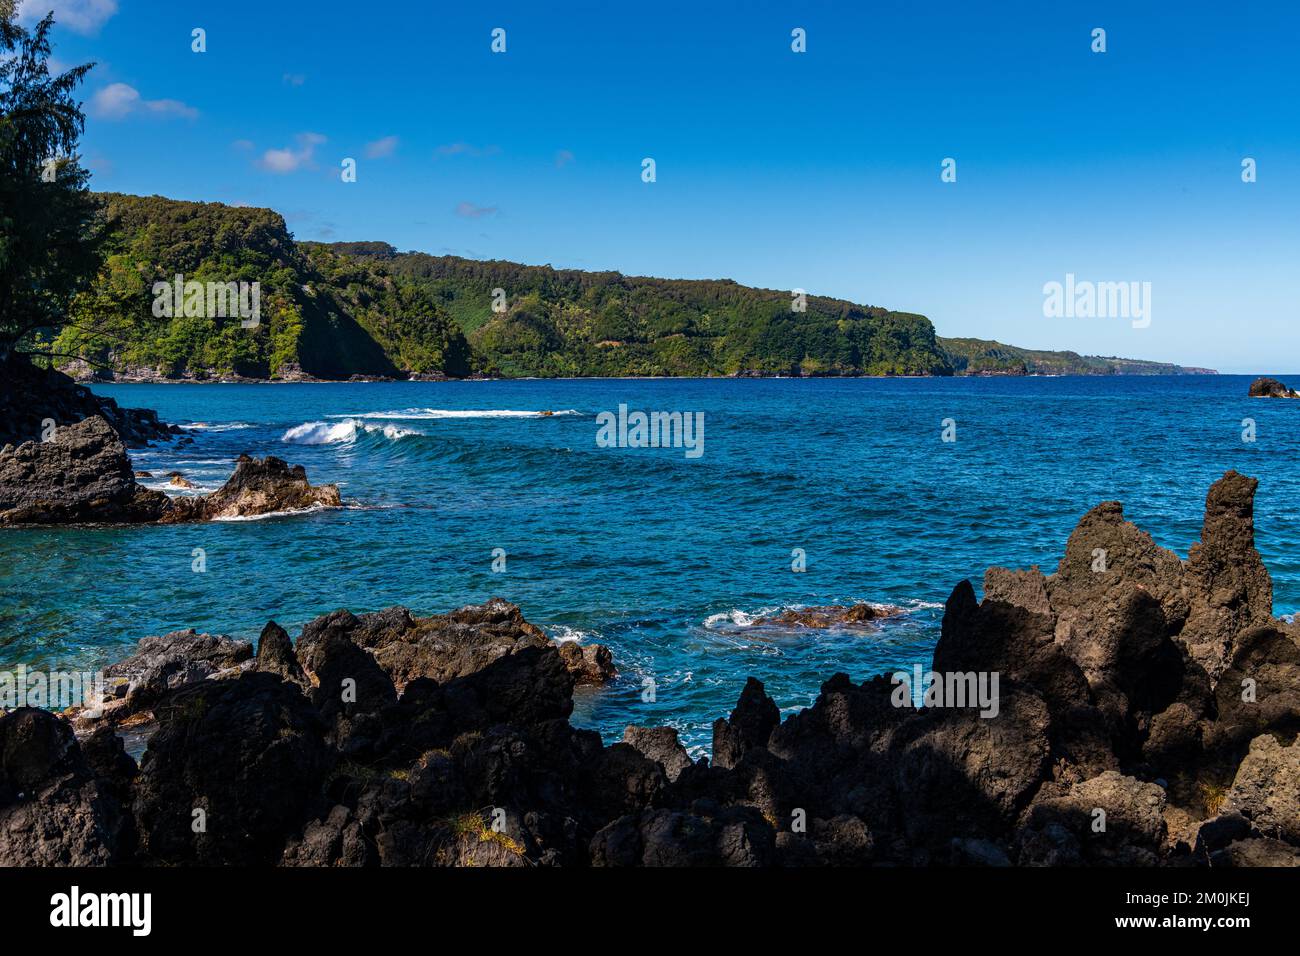 Roche volcanique le long du rivage de la péninsule de Keanae à Maui, Hawaï Banque D'Images